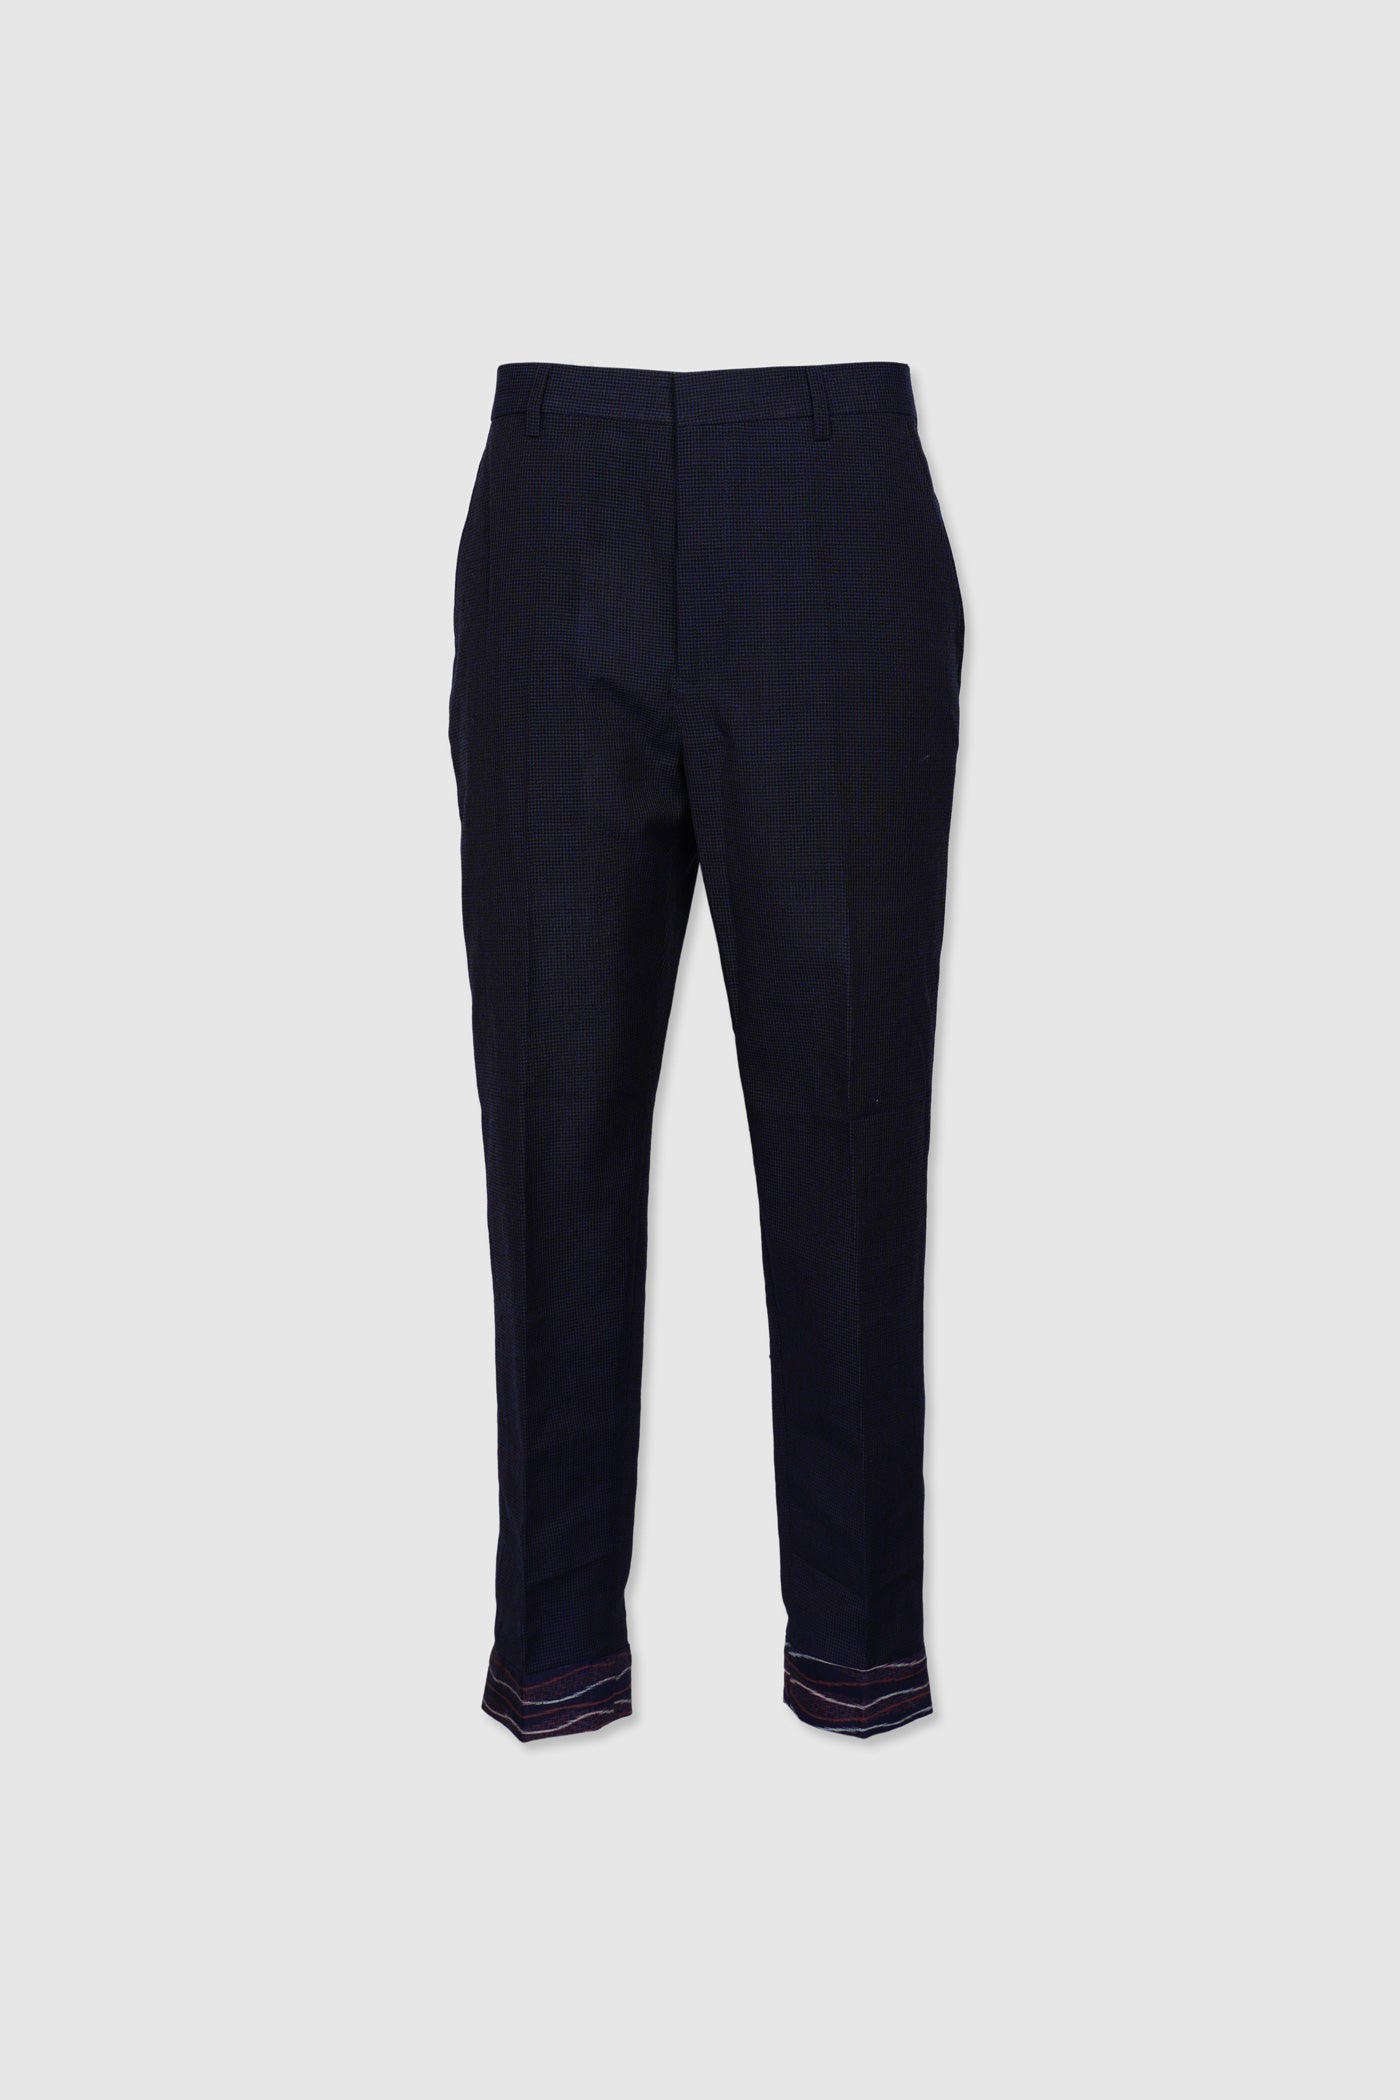 Shop Lightweight Wool Pants with Bottom Hem Details – DGA Threads